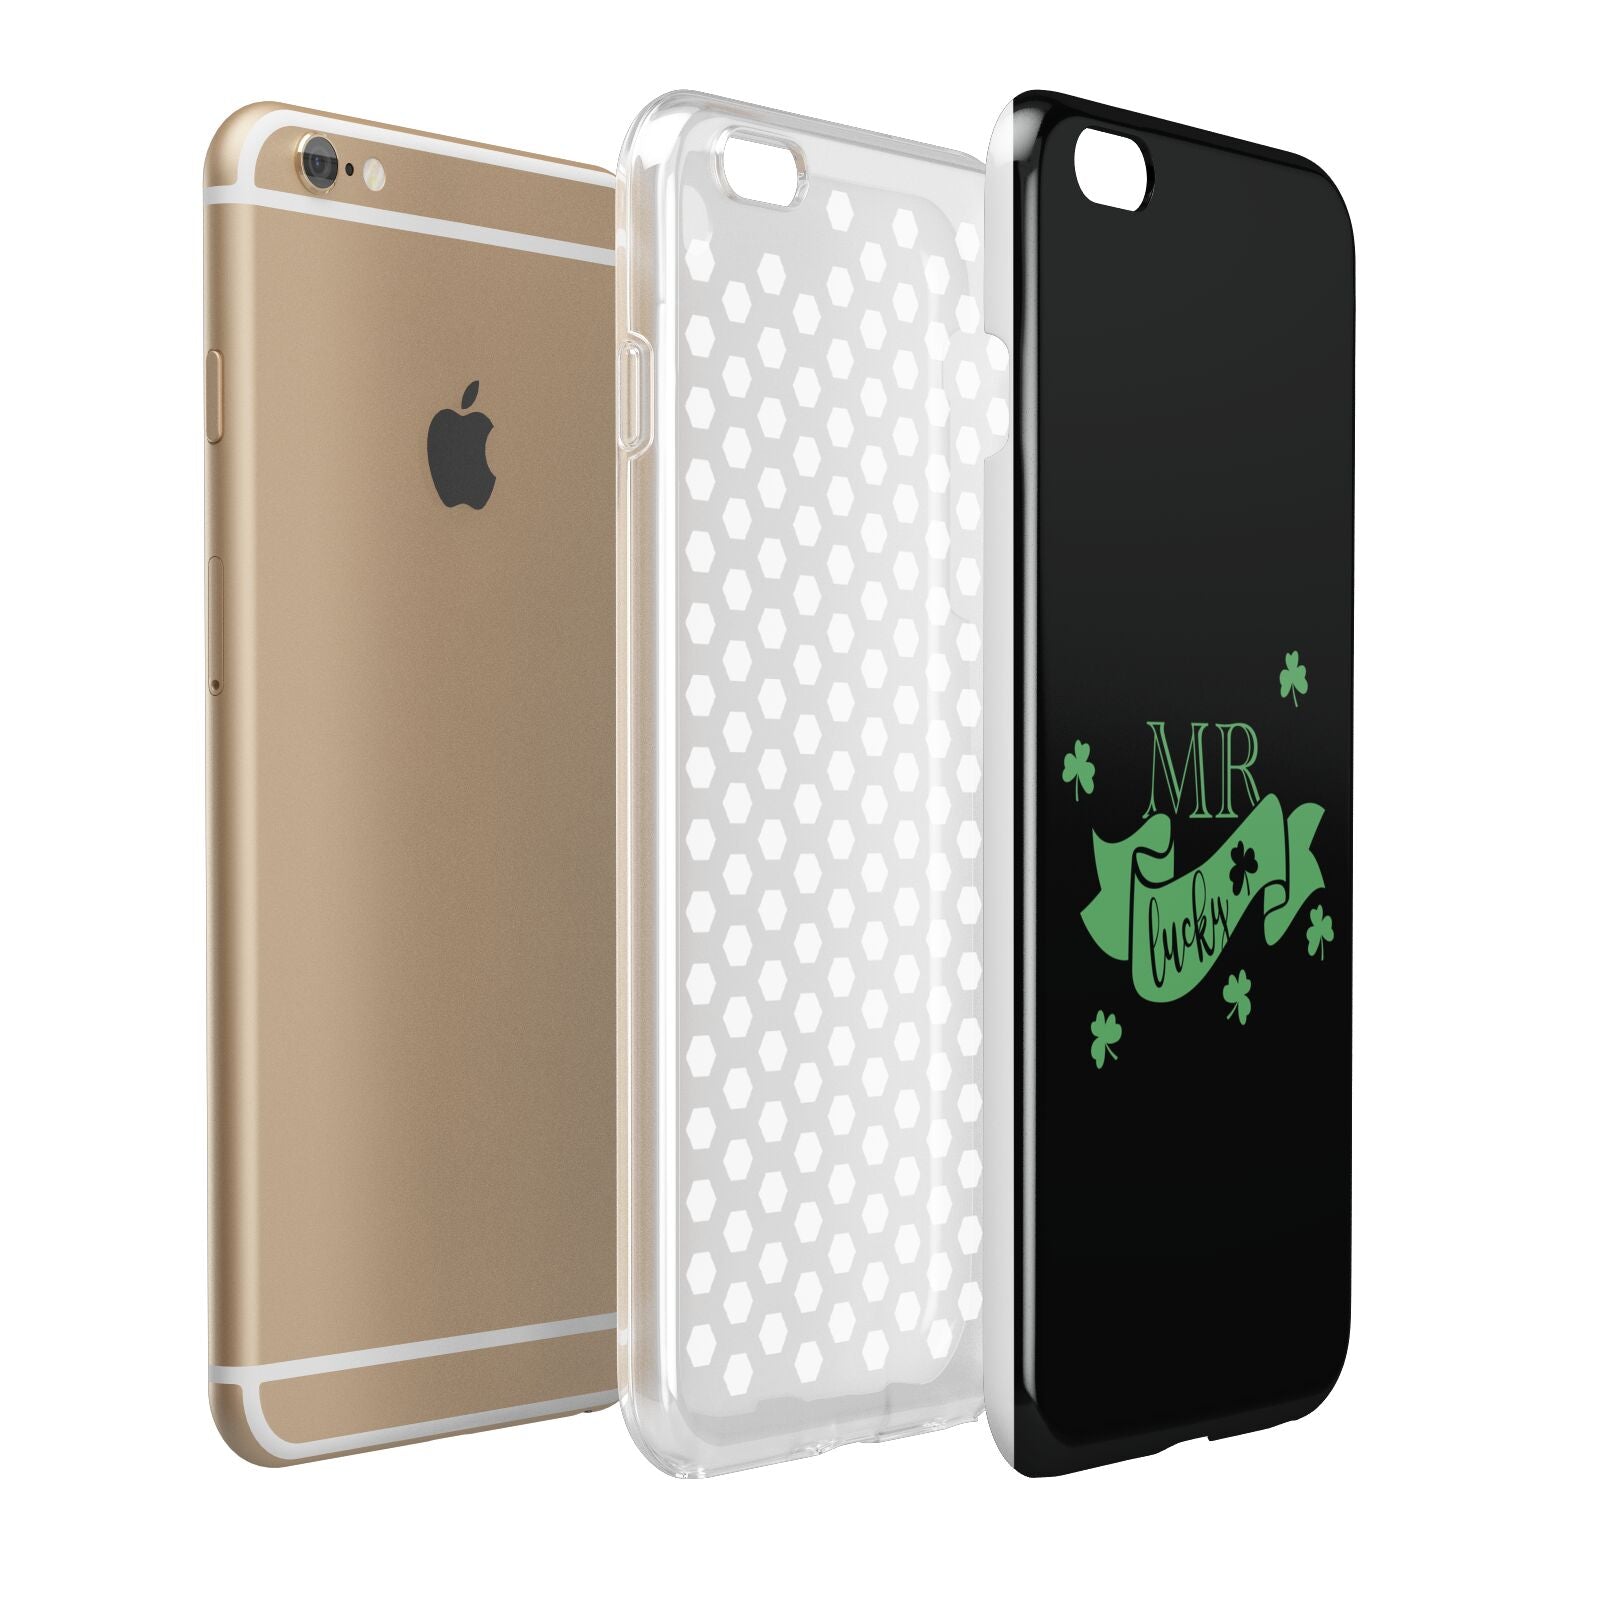 Mr Lucky Apple iPhone 6 Plus 3D Tough Case Expand Detail Image